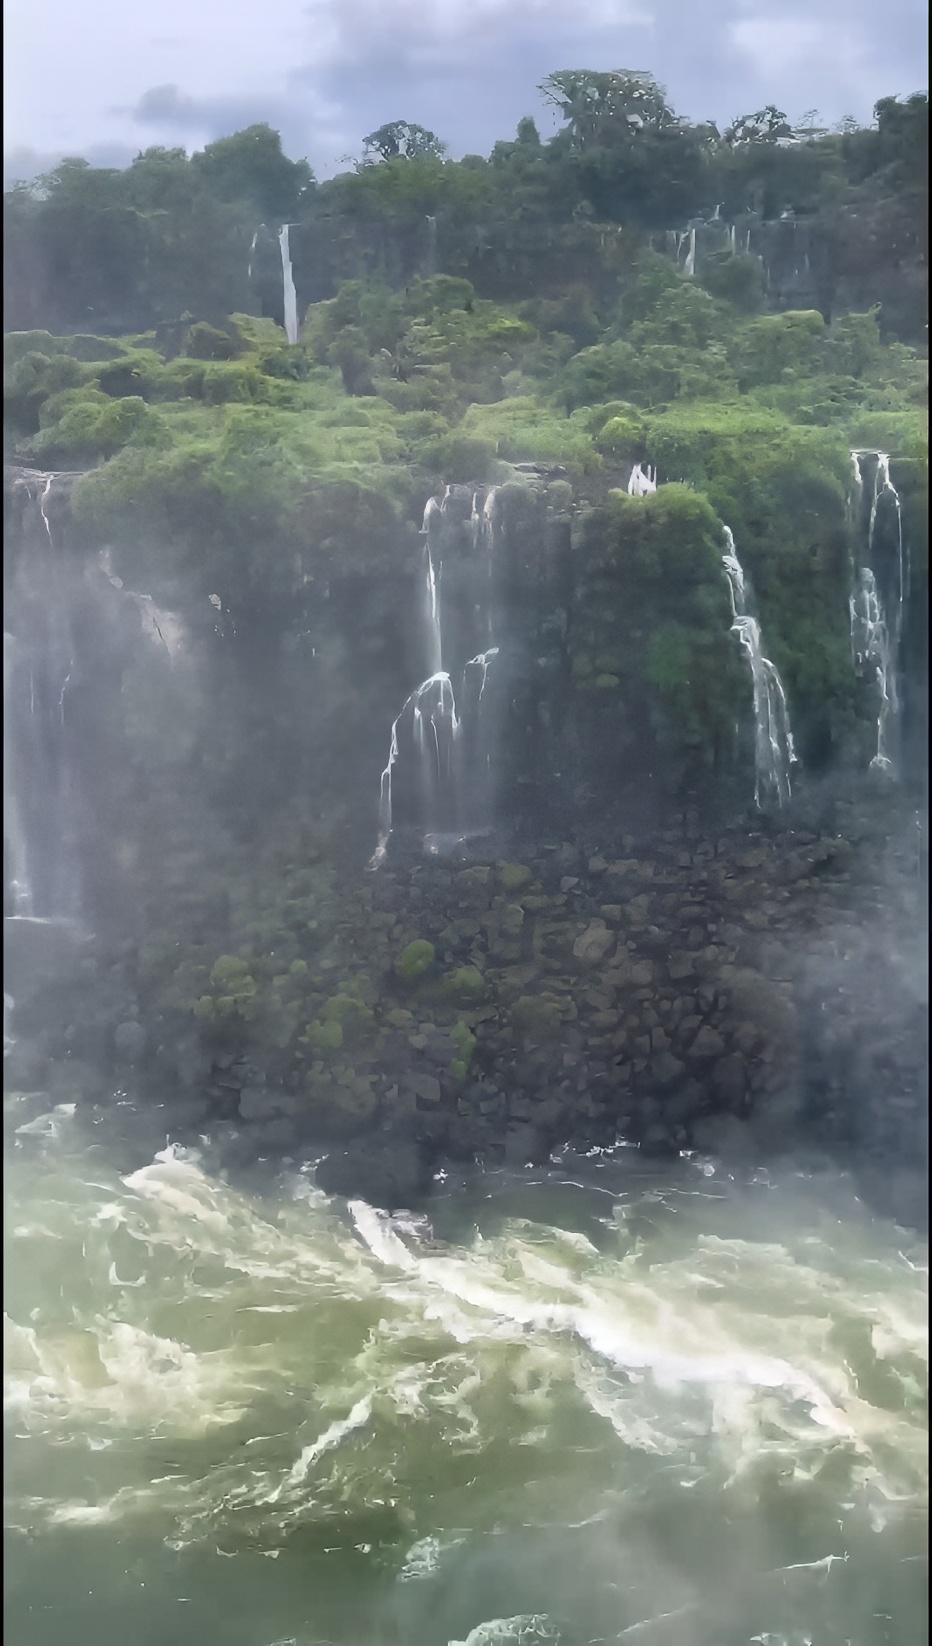 相隔多年还是很漂亮……伊瓜苏瀑布 #旅行推荐官 #大自然的奇观 #